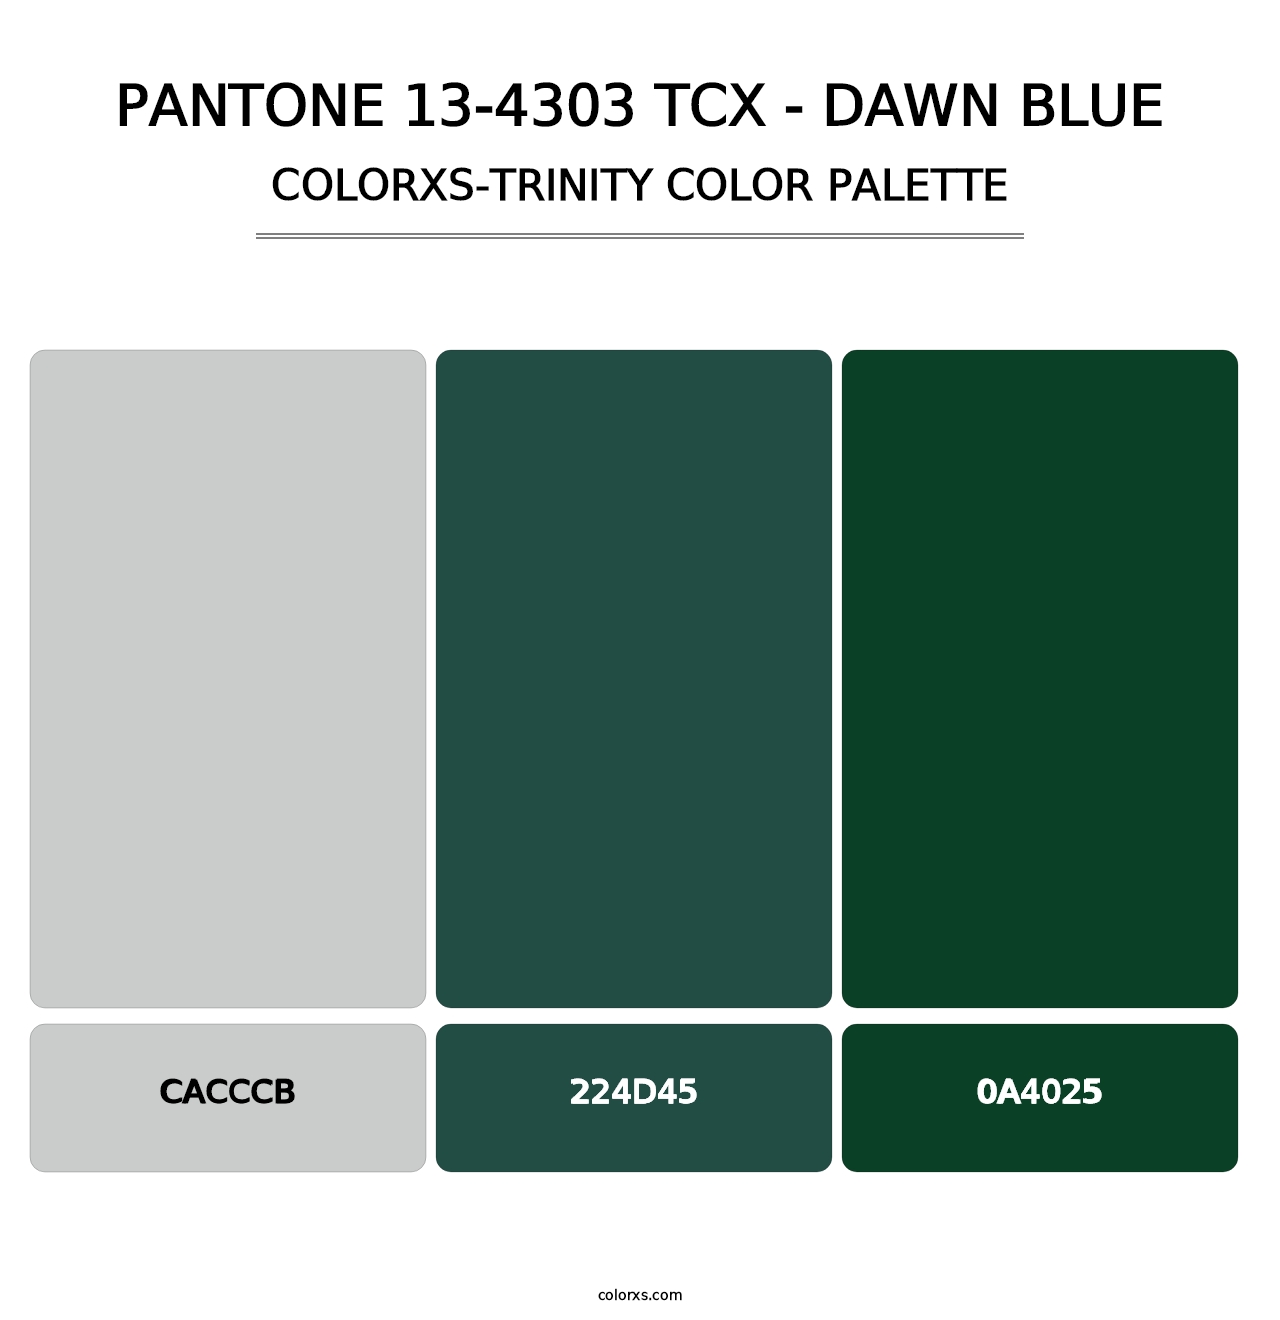 PANTONE 13-4303 TCX - Dawn Blue - Colorxs Trinity Palette